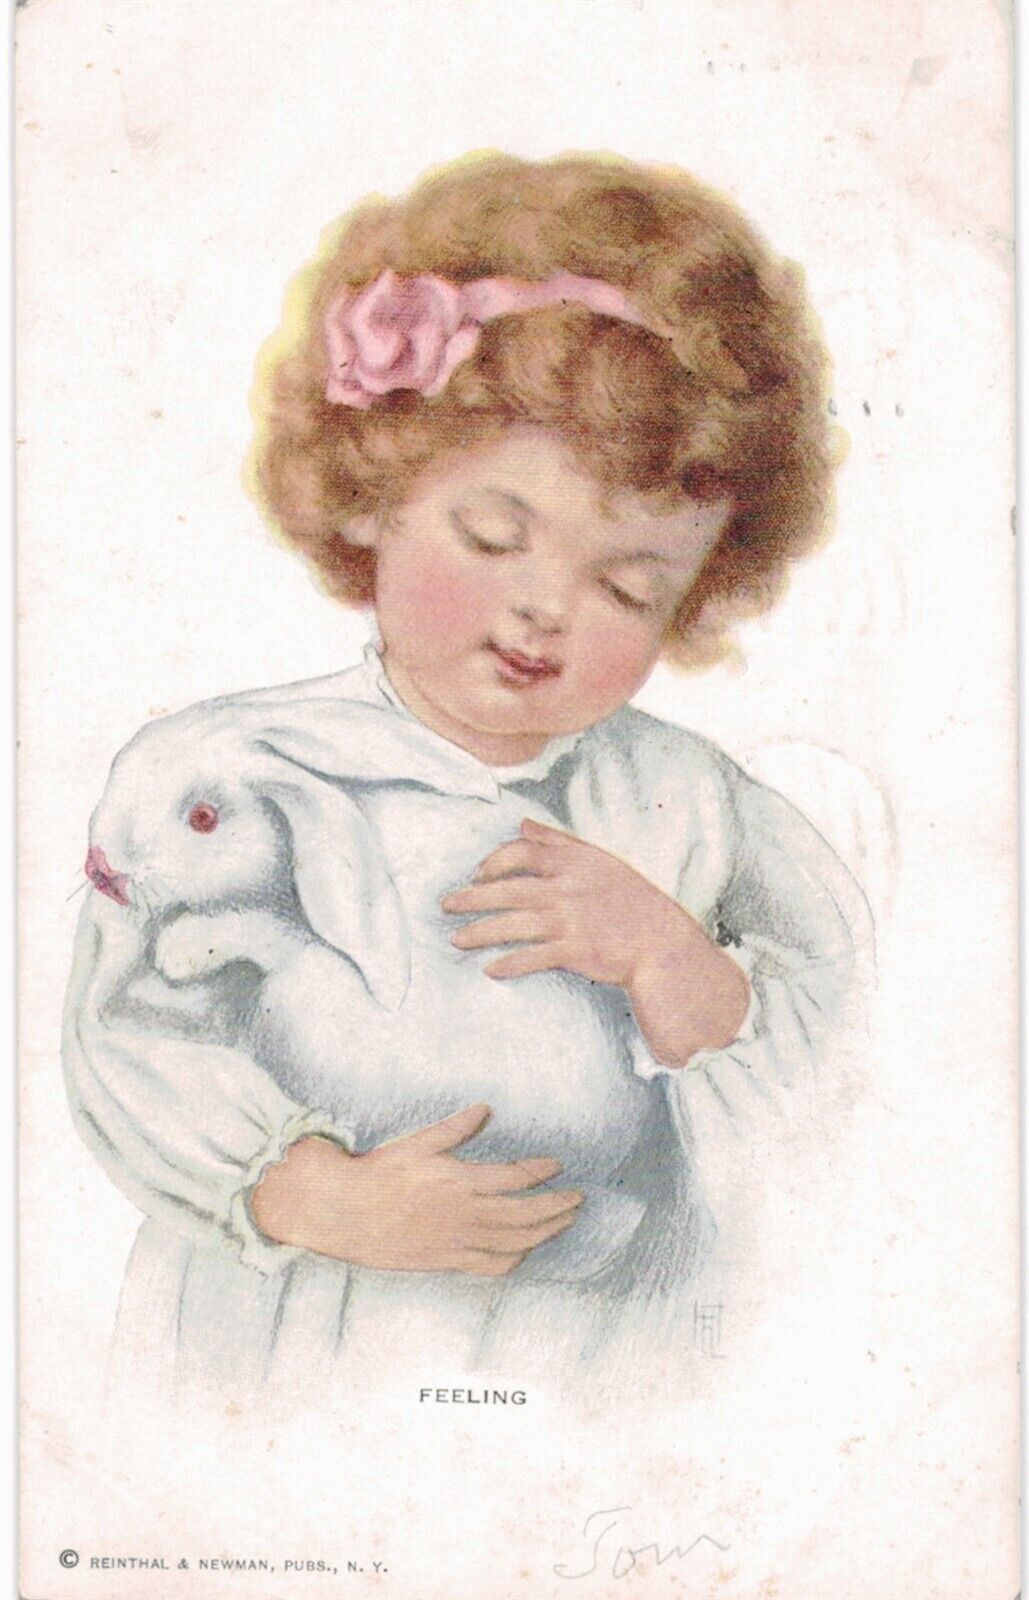 Easter Bunny A/S Harrison Fisher Feeling Girl & White Rabbit 1910 